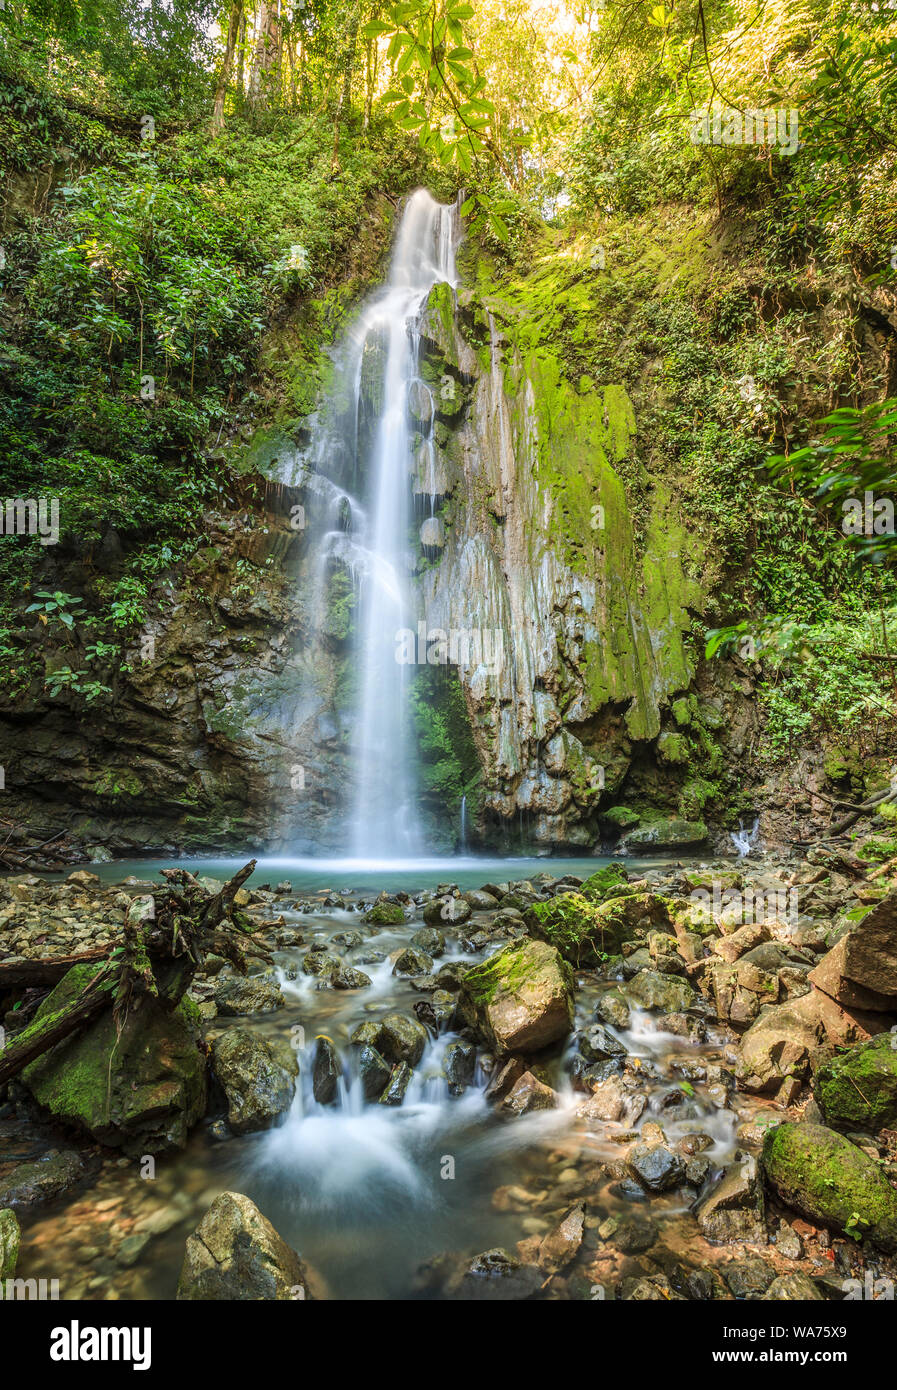 La catarata de la llorona waterfall in Corcovado National Park in Costa Rica Stock Photo